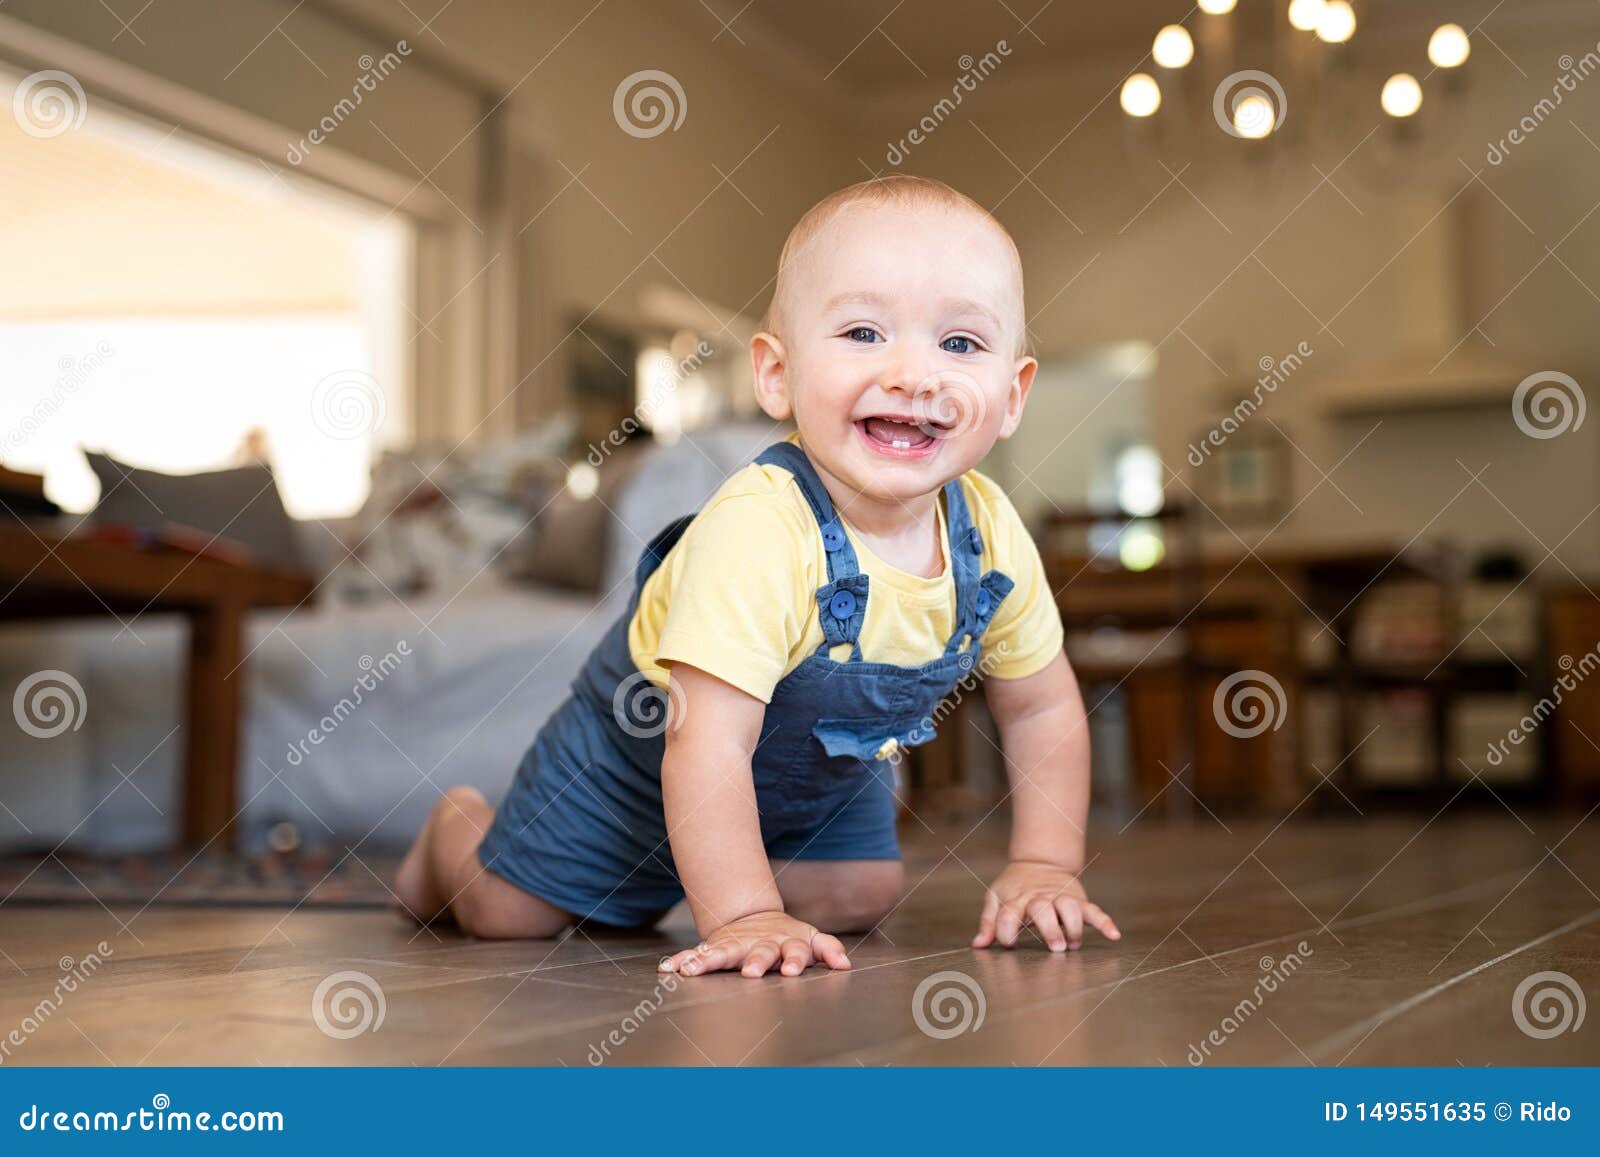 little happy boy crawling on floor